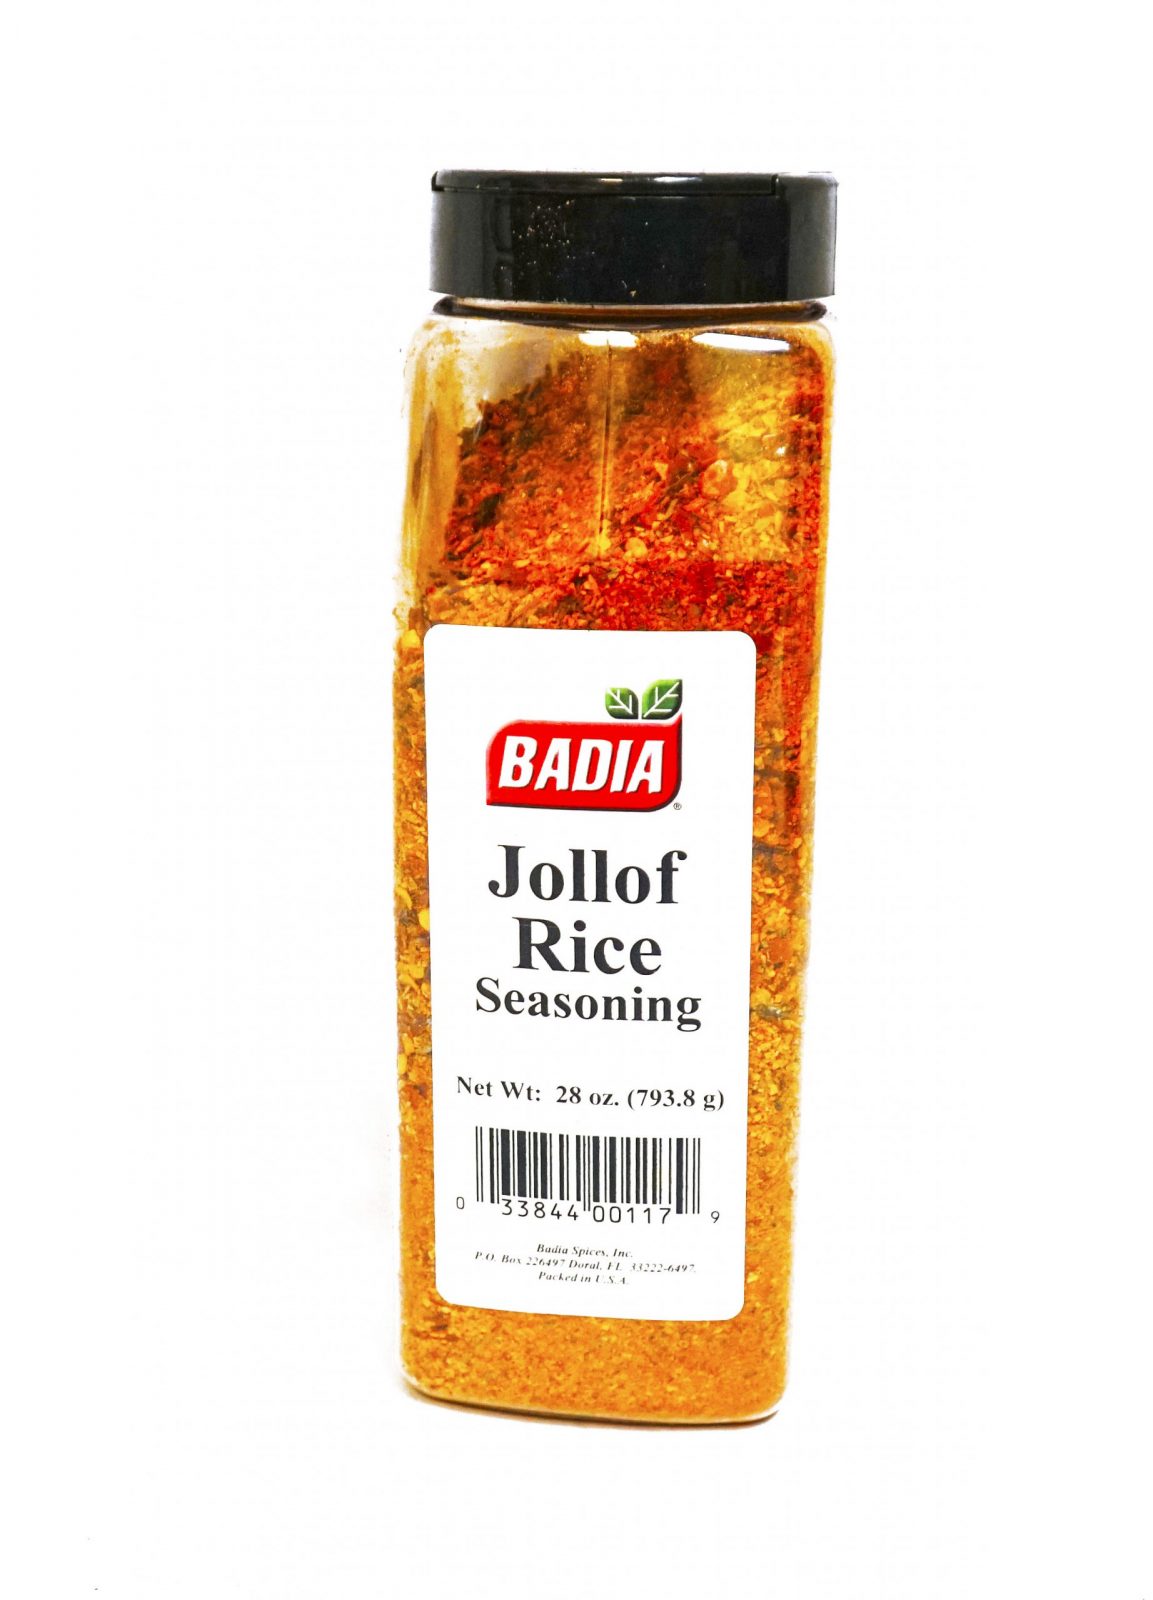 Badia Fried Rice Seasoning 6oz. – TinderoBoy